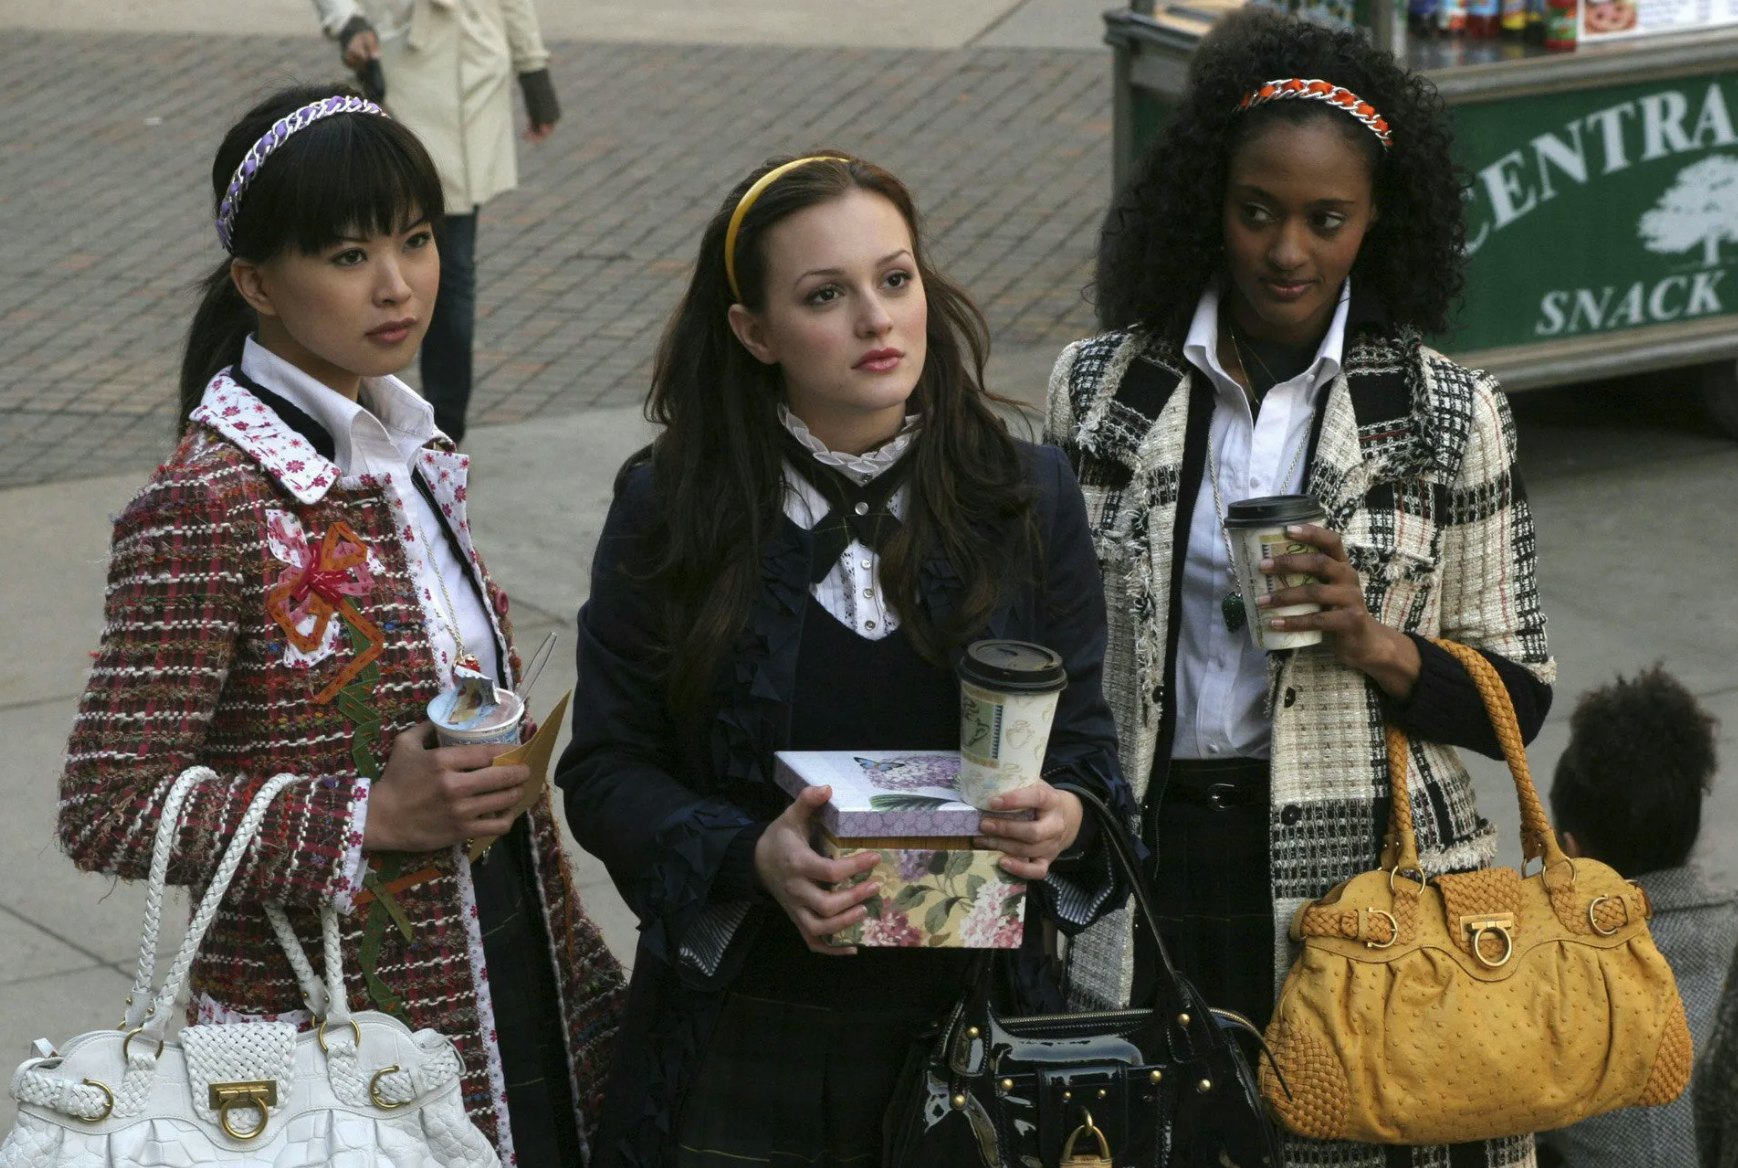 Gossip Girl' Season 2, Episode 5 Recap: The Four Major Moments